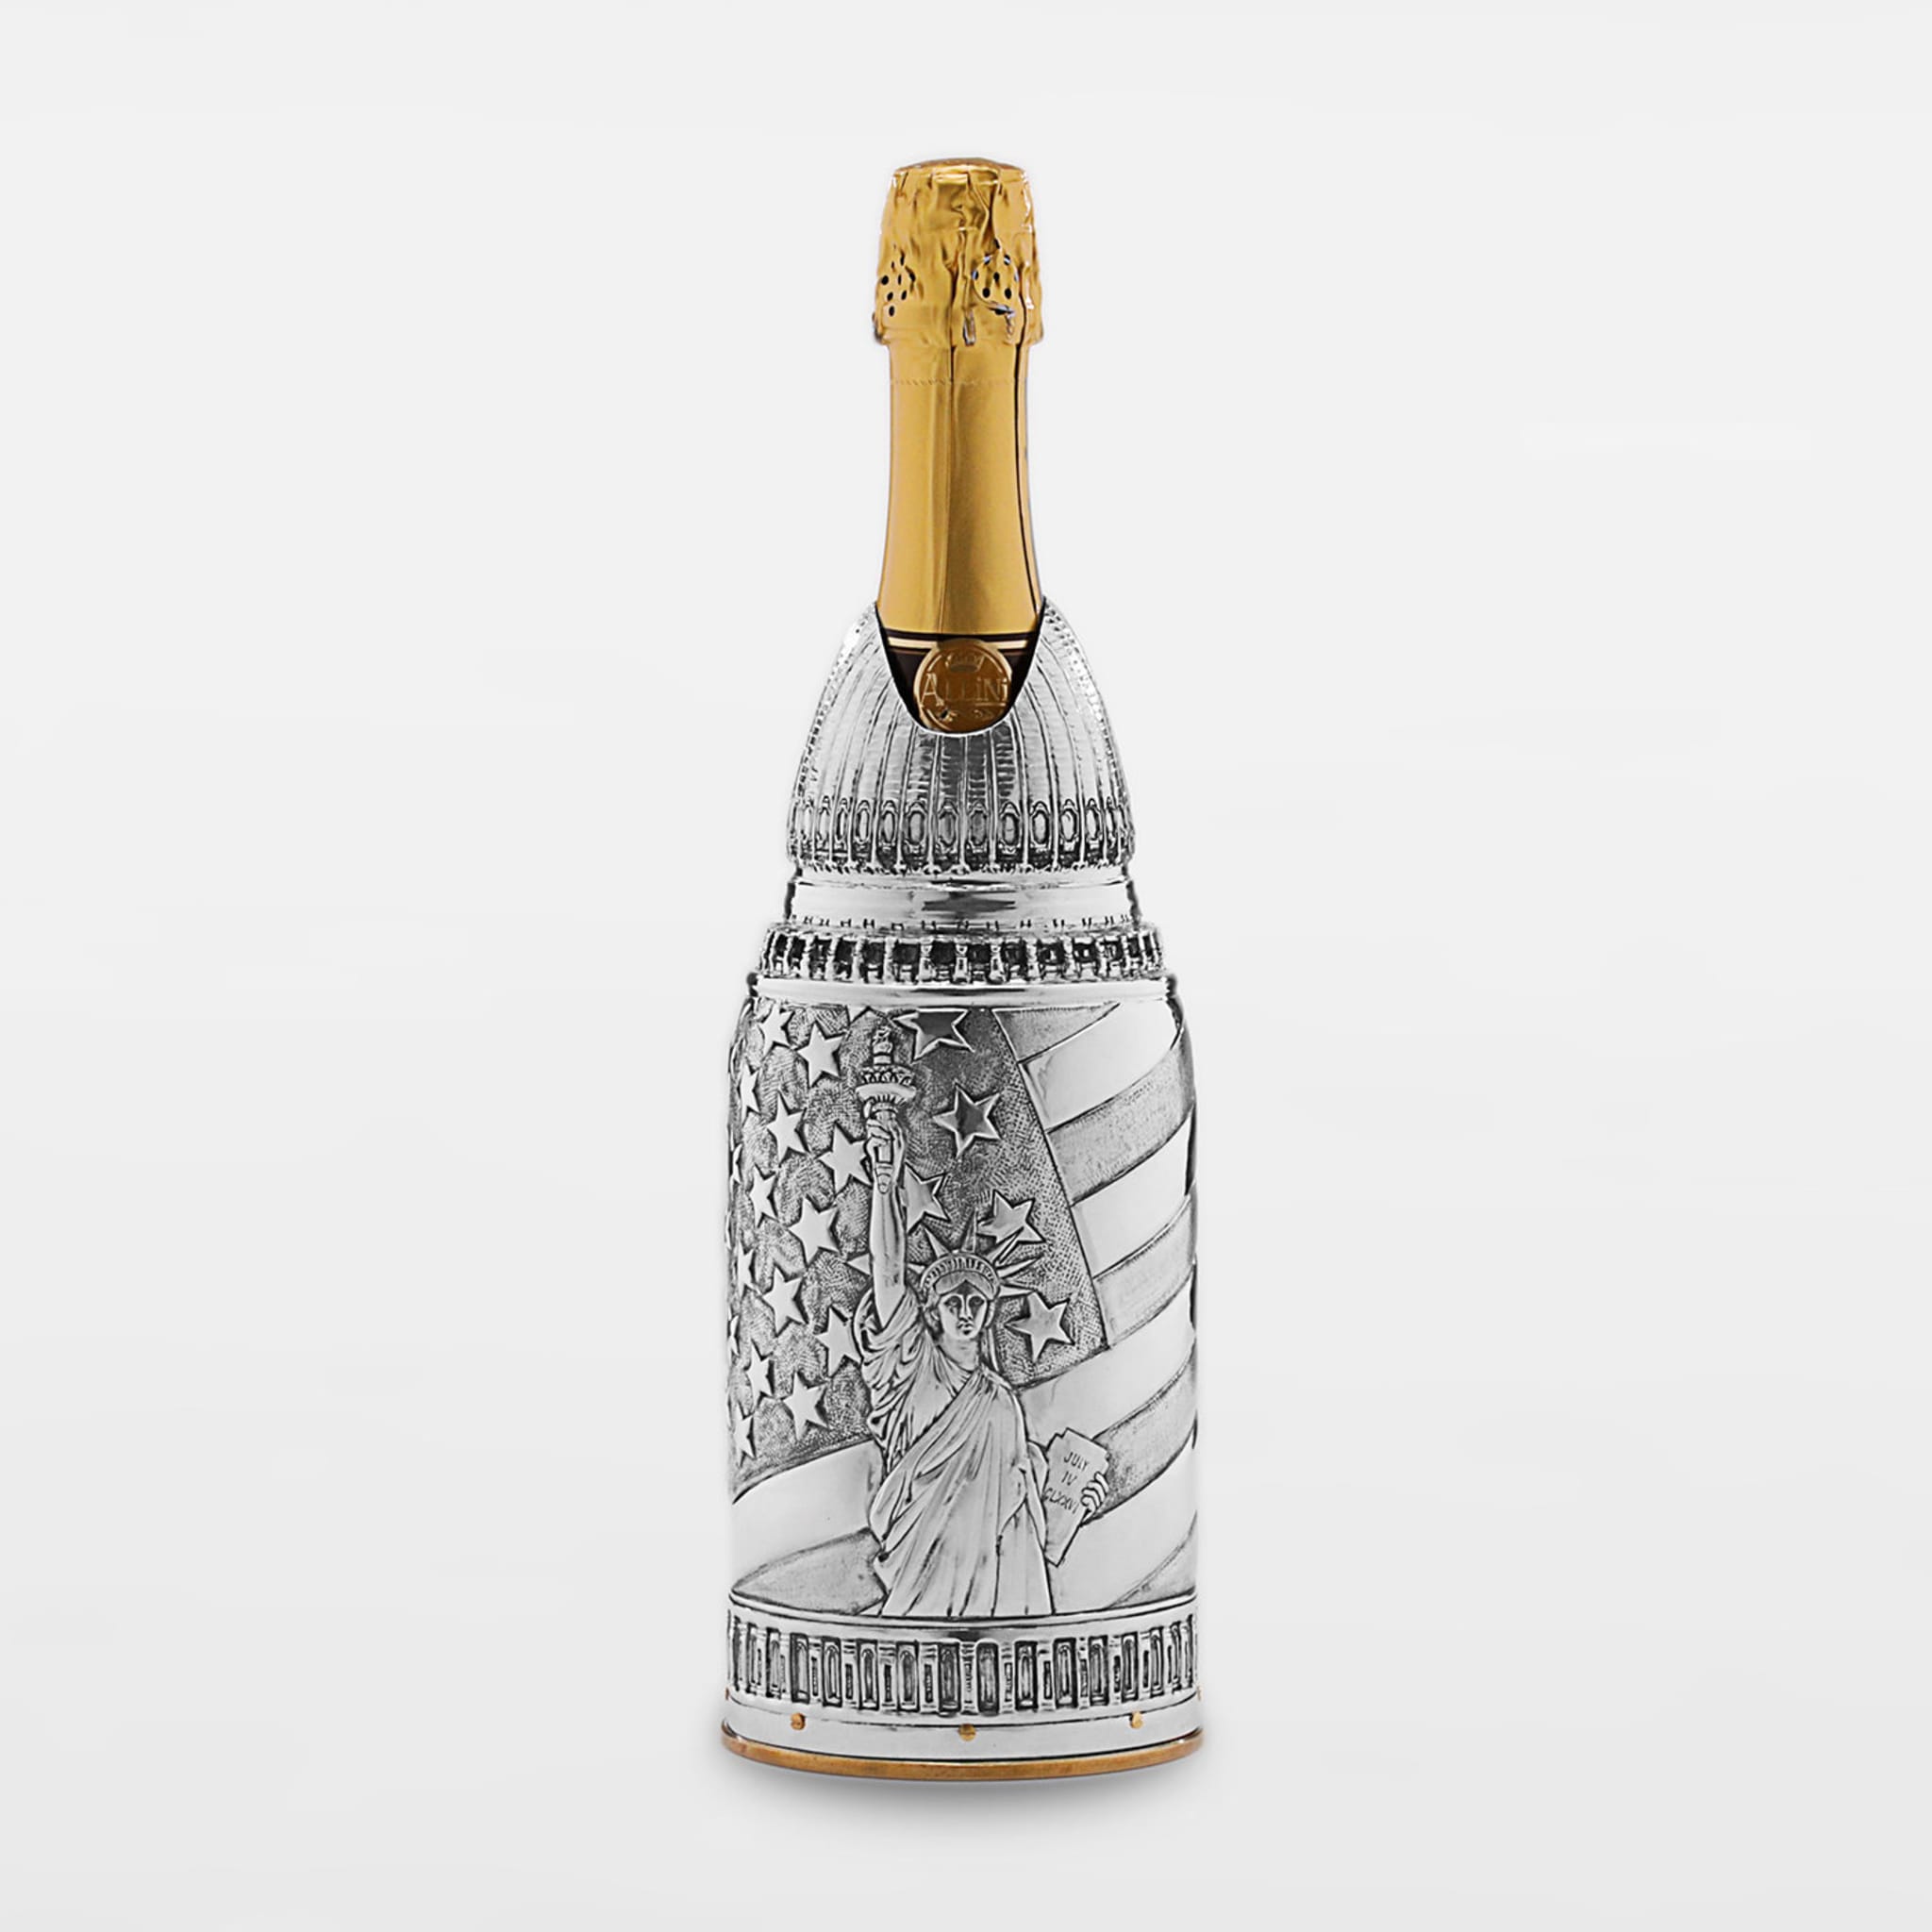 American Dream Champagne Cover by Lorenzo Foglia - Alternative view 1